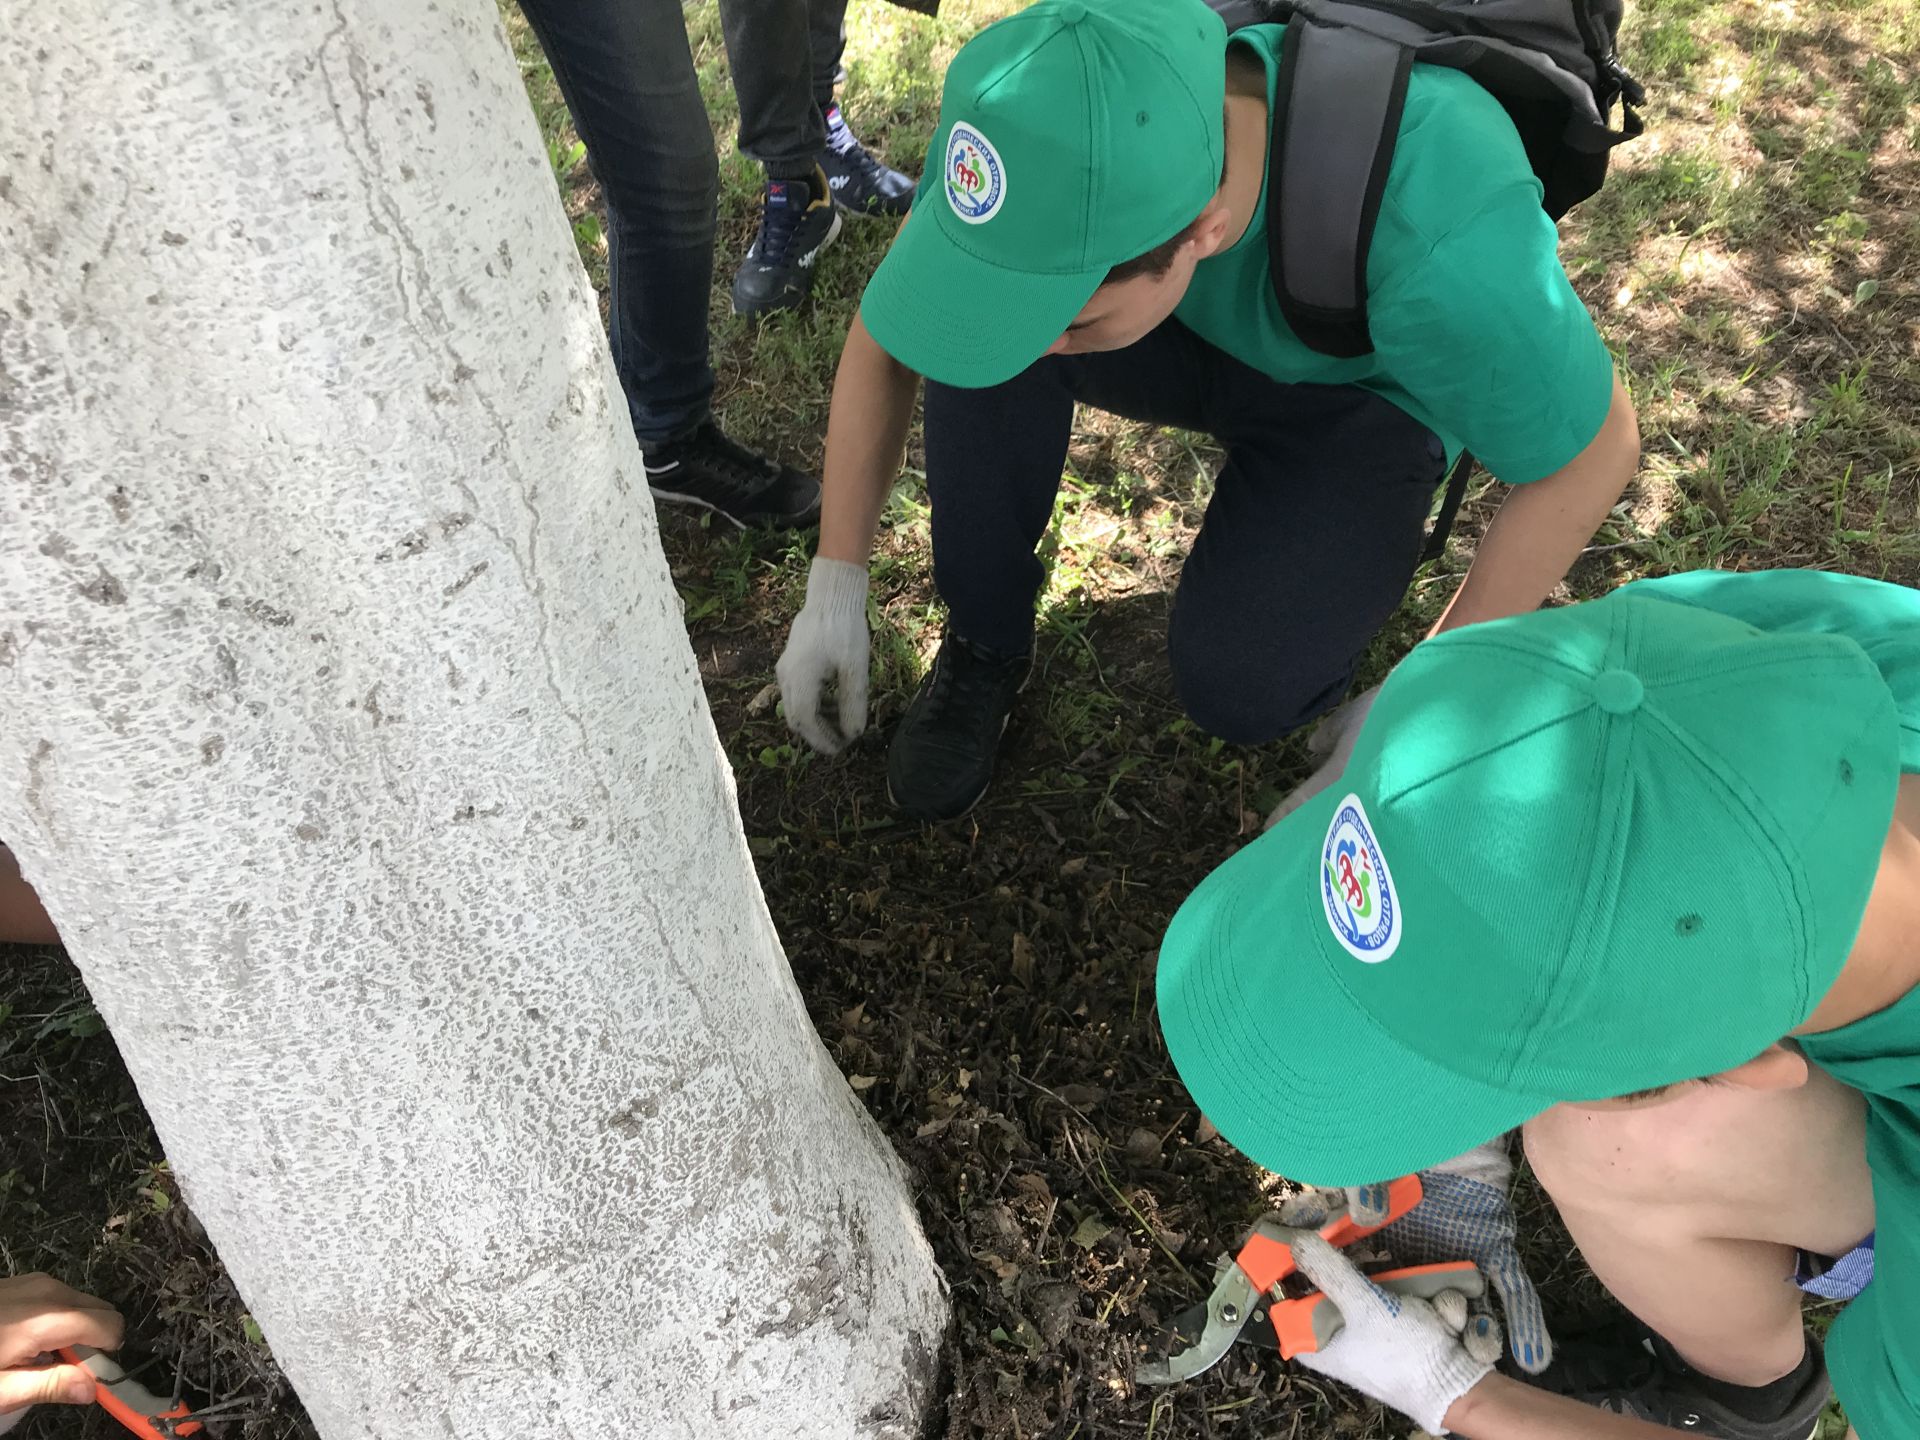 Более 10 заинских подростков выбрали на лето работу озеленителя